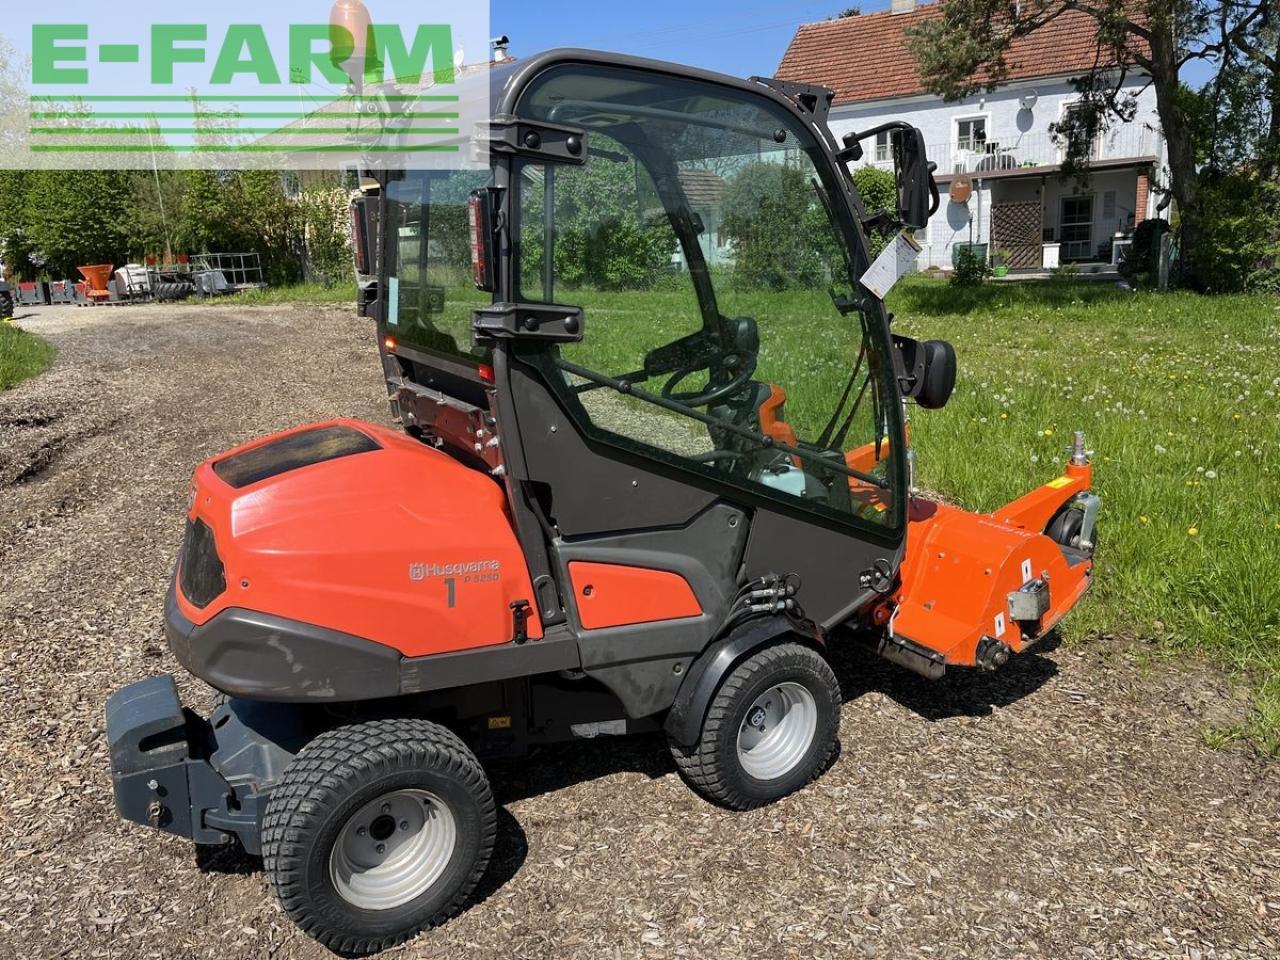 Farm tractor Husqvarna p525 d mit kabine und schleglmäher: picture 7